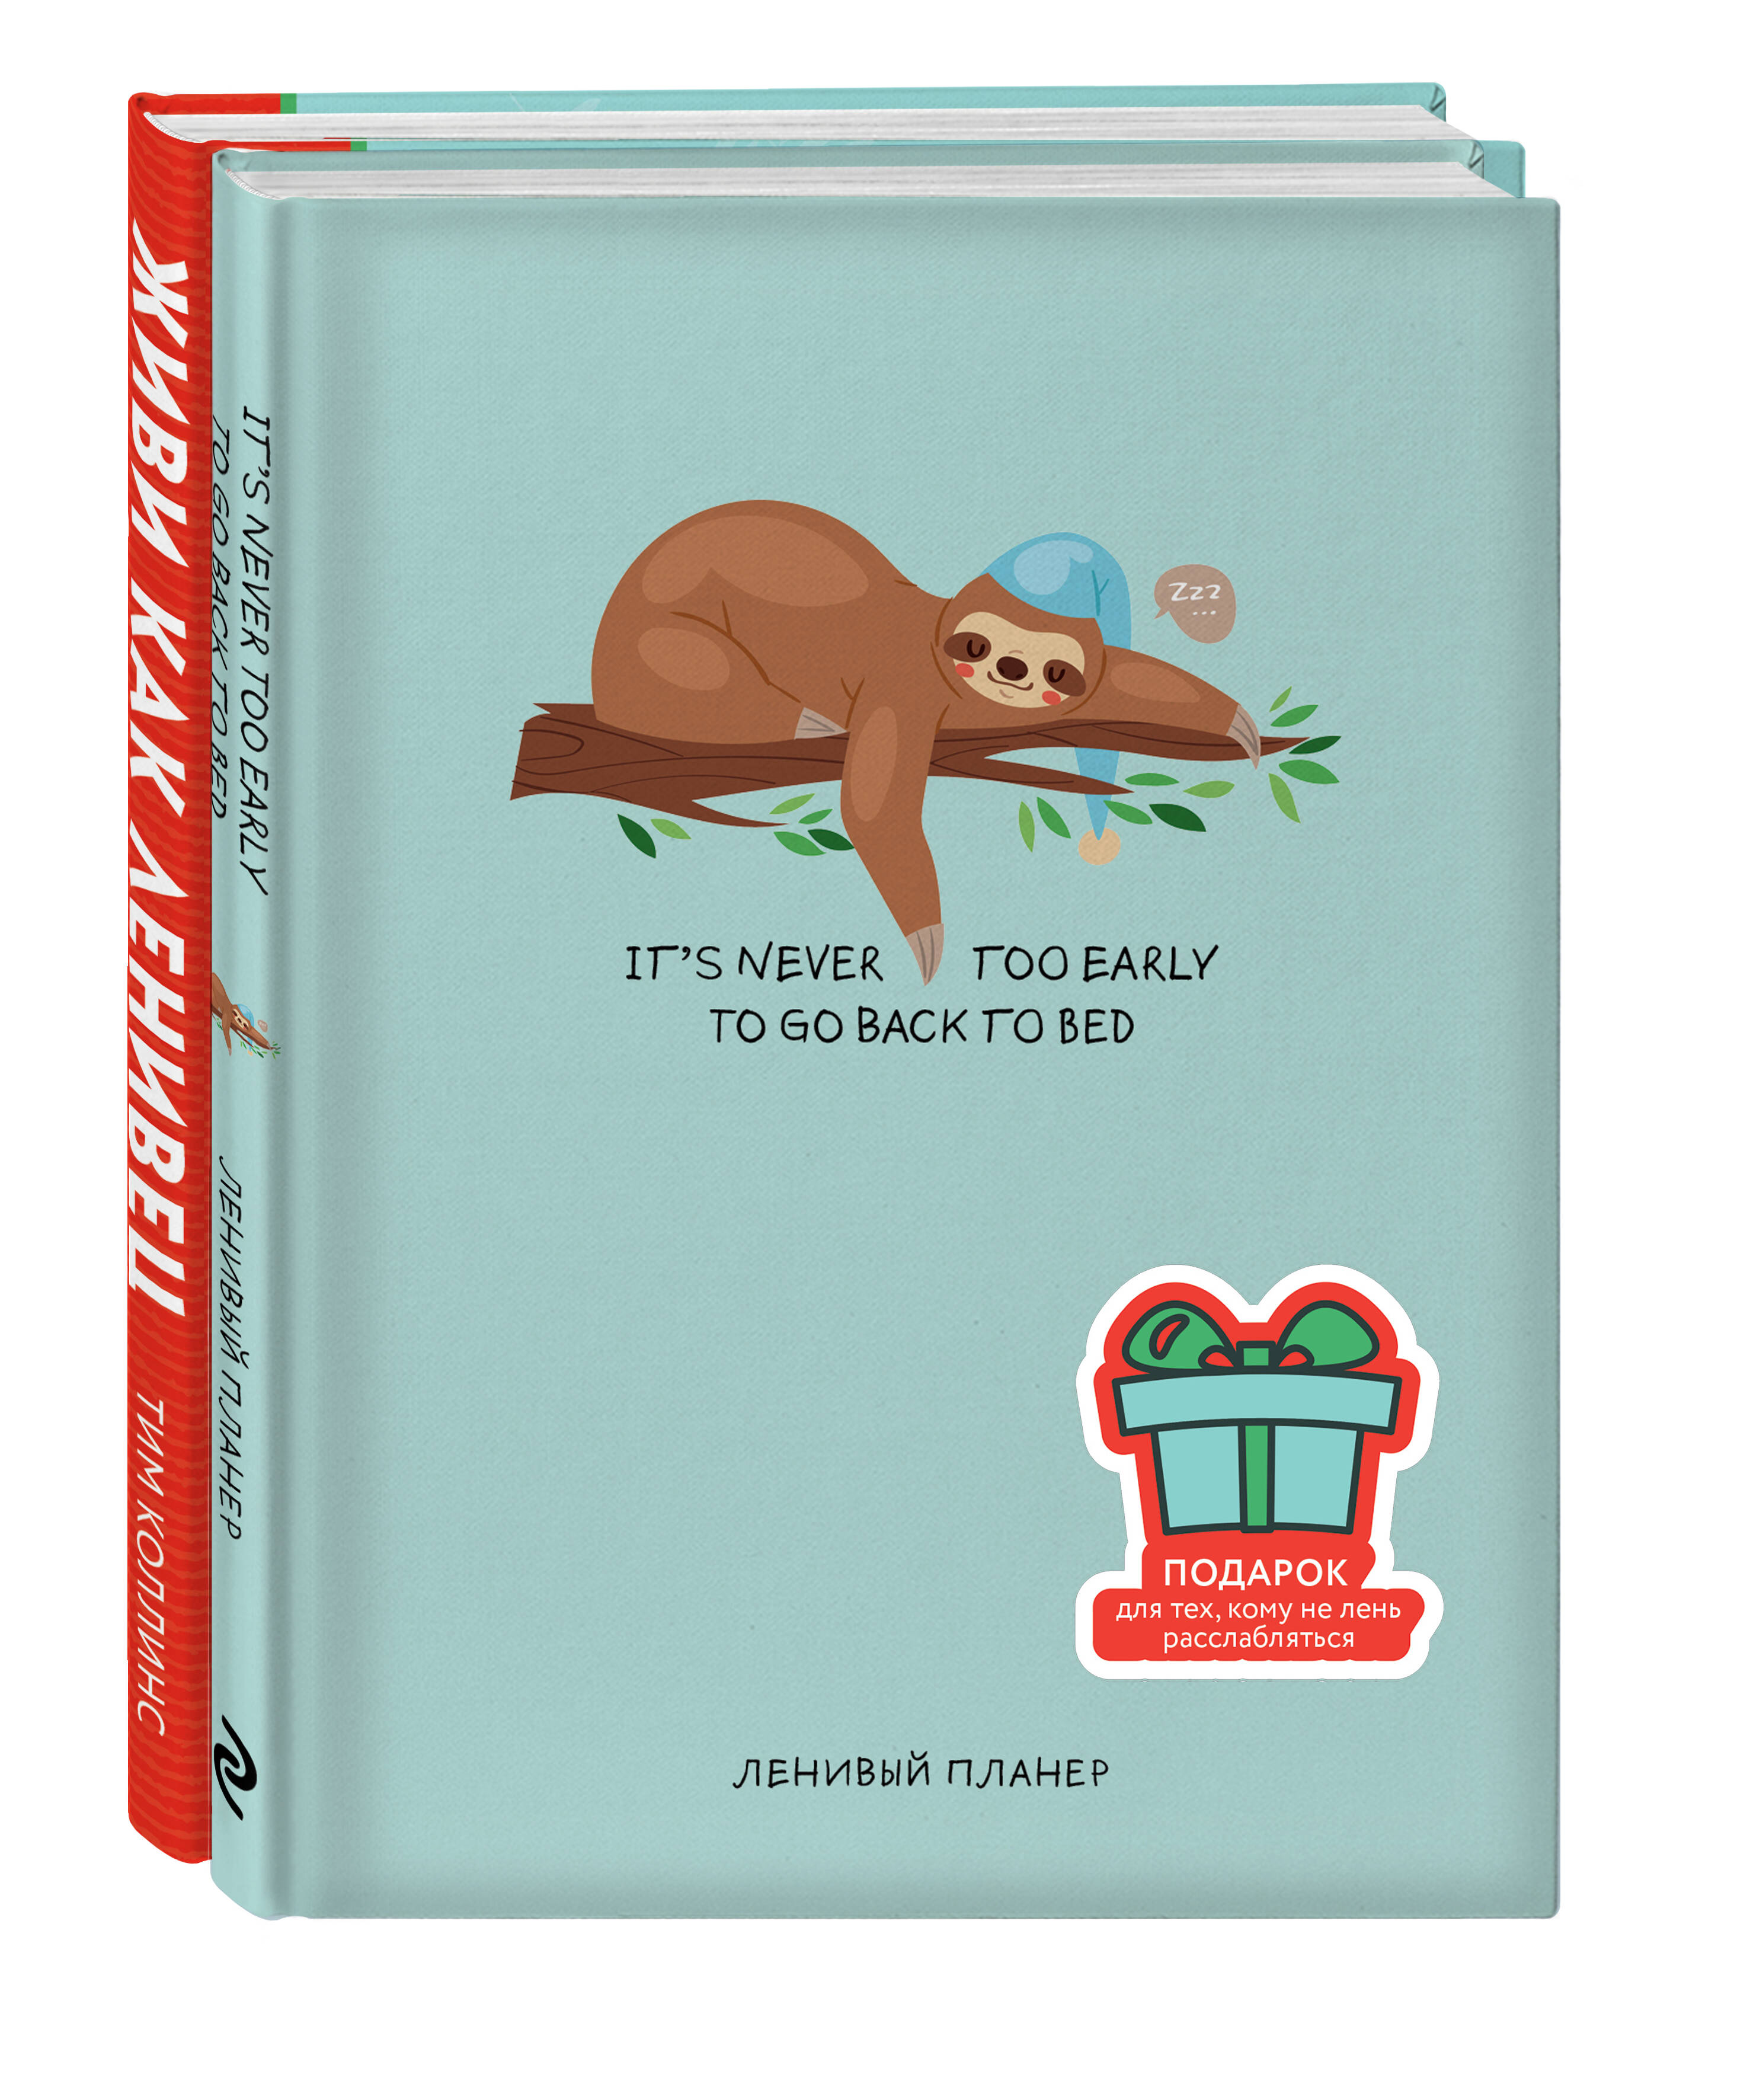 Коллинс Тим Подарок для тех, кому не лень расслабляться: Живи как ленивец. Never. Give Up / Ленивый планер (комплект из 2 книг)